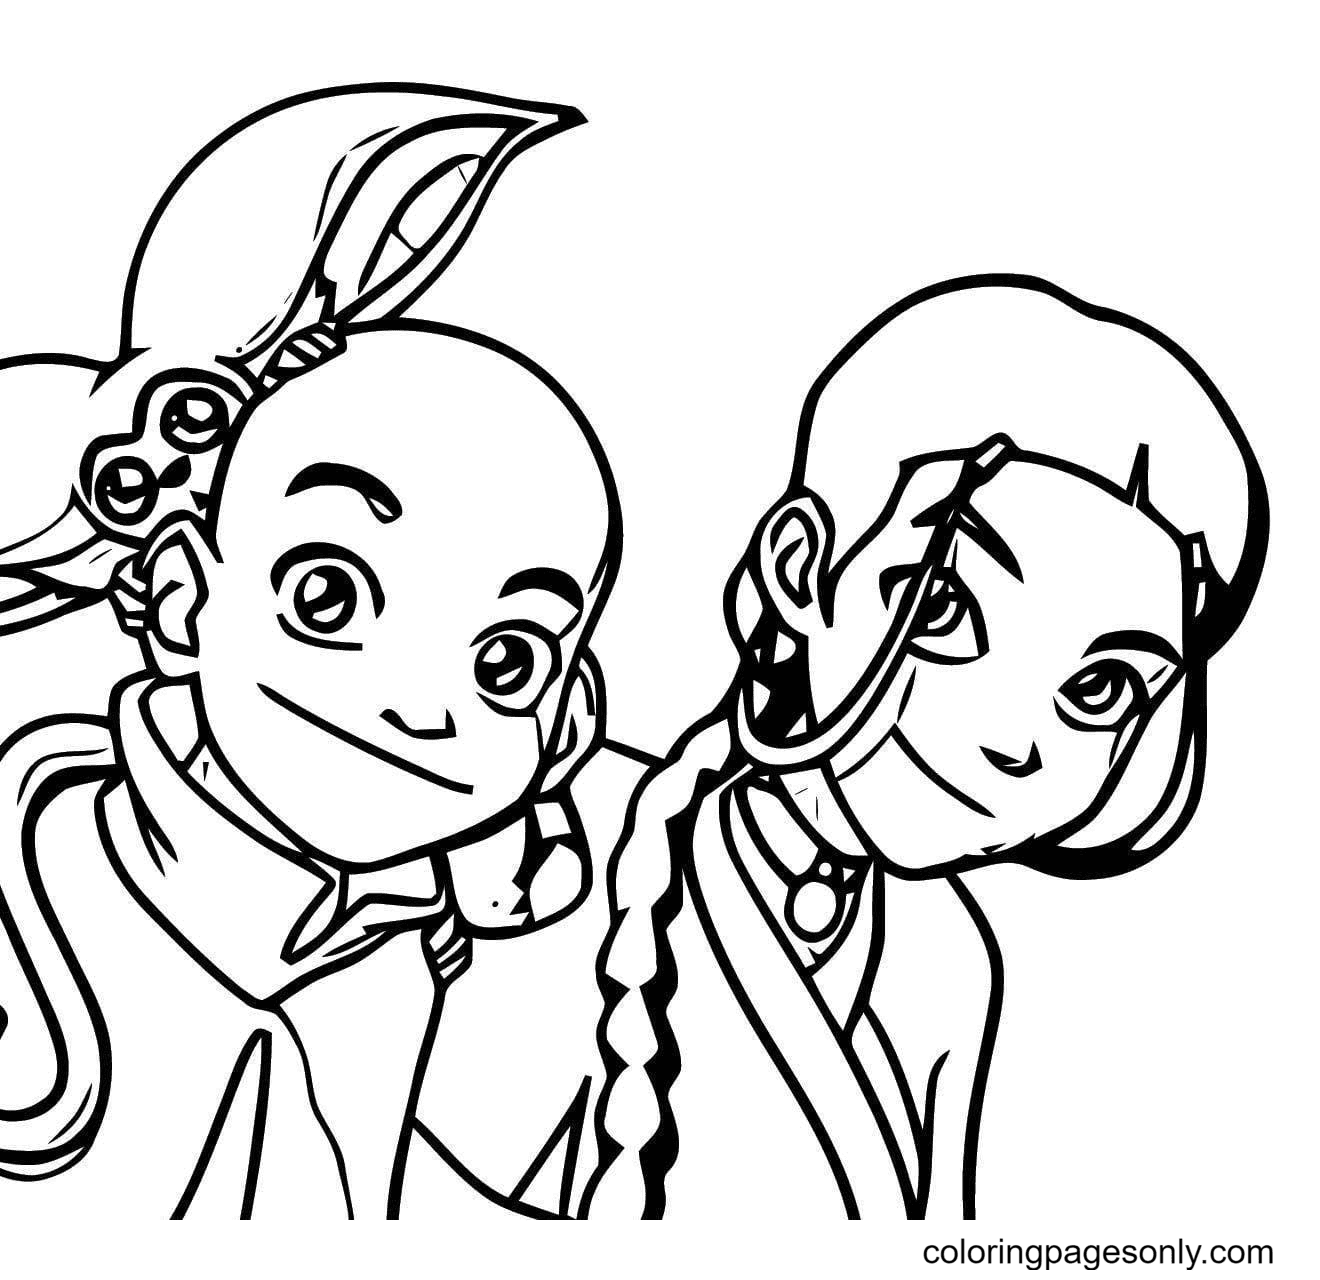 Aang, Momo and Katara Coloring Pages